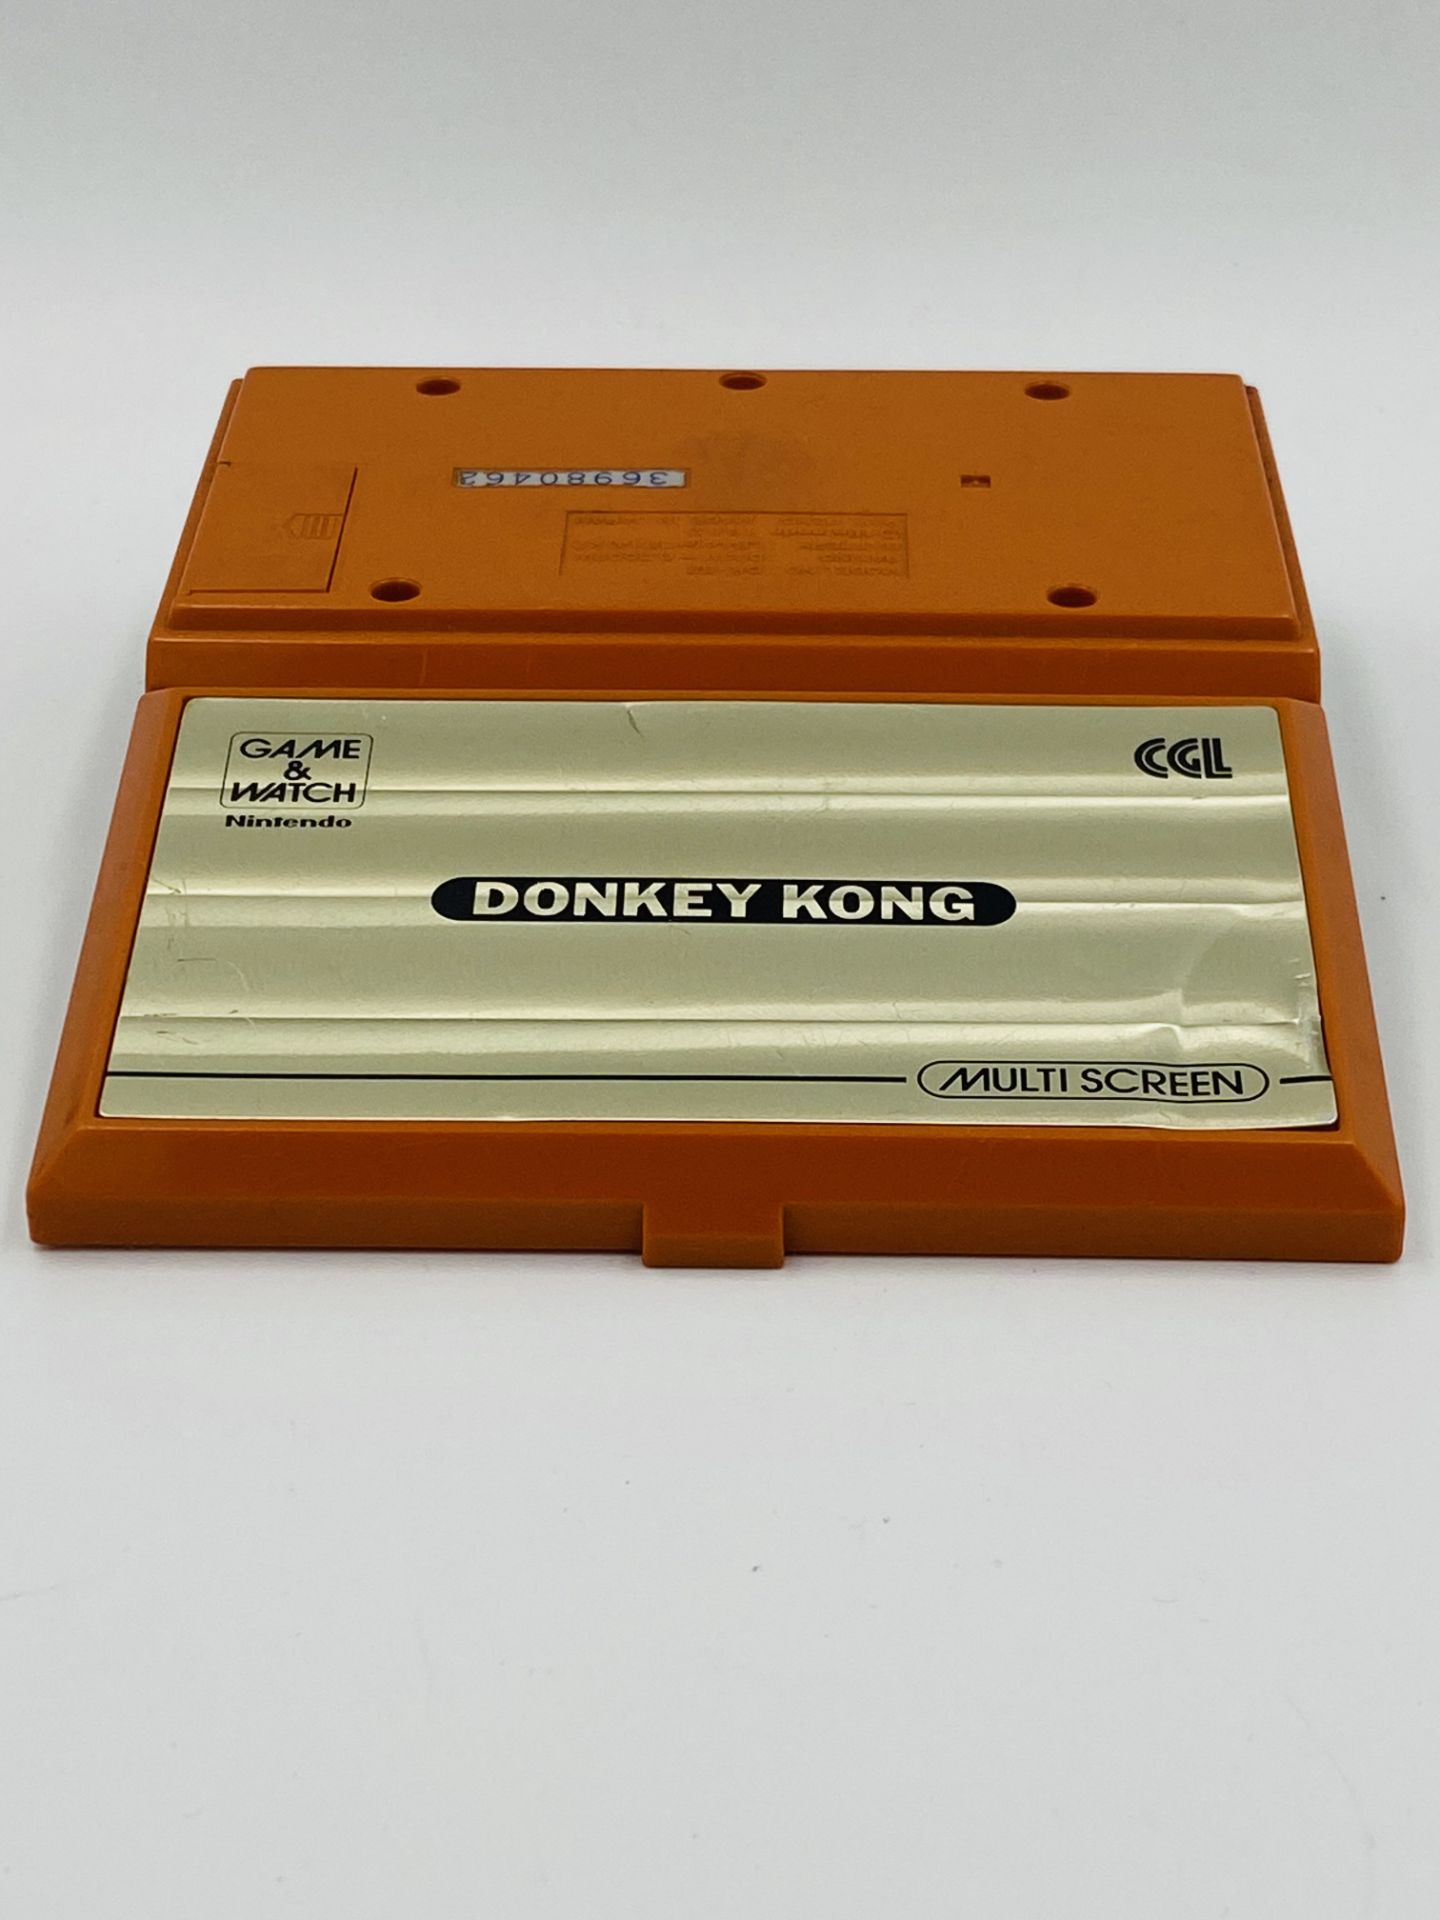 Nintendo Game & Watch Donkey Kong, model DK-52 - Image 4 of 4